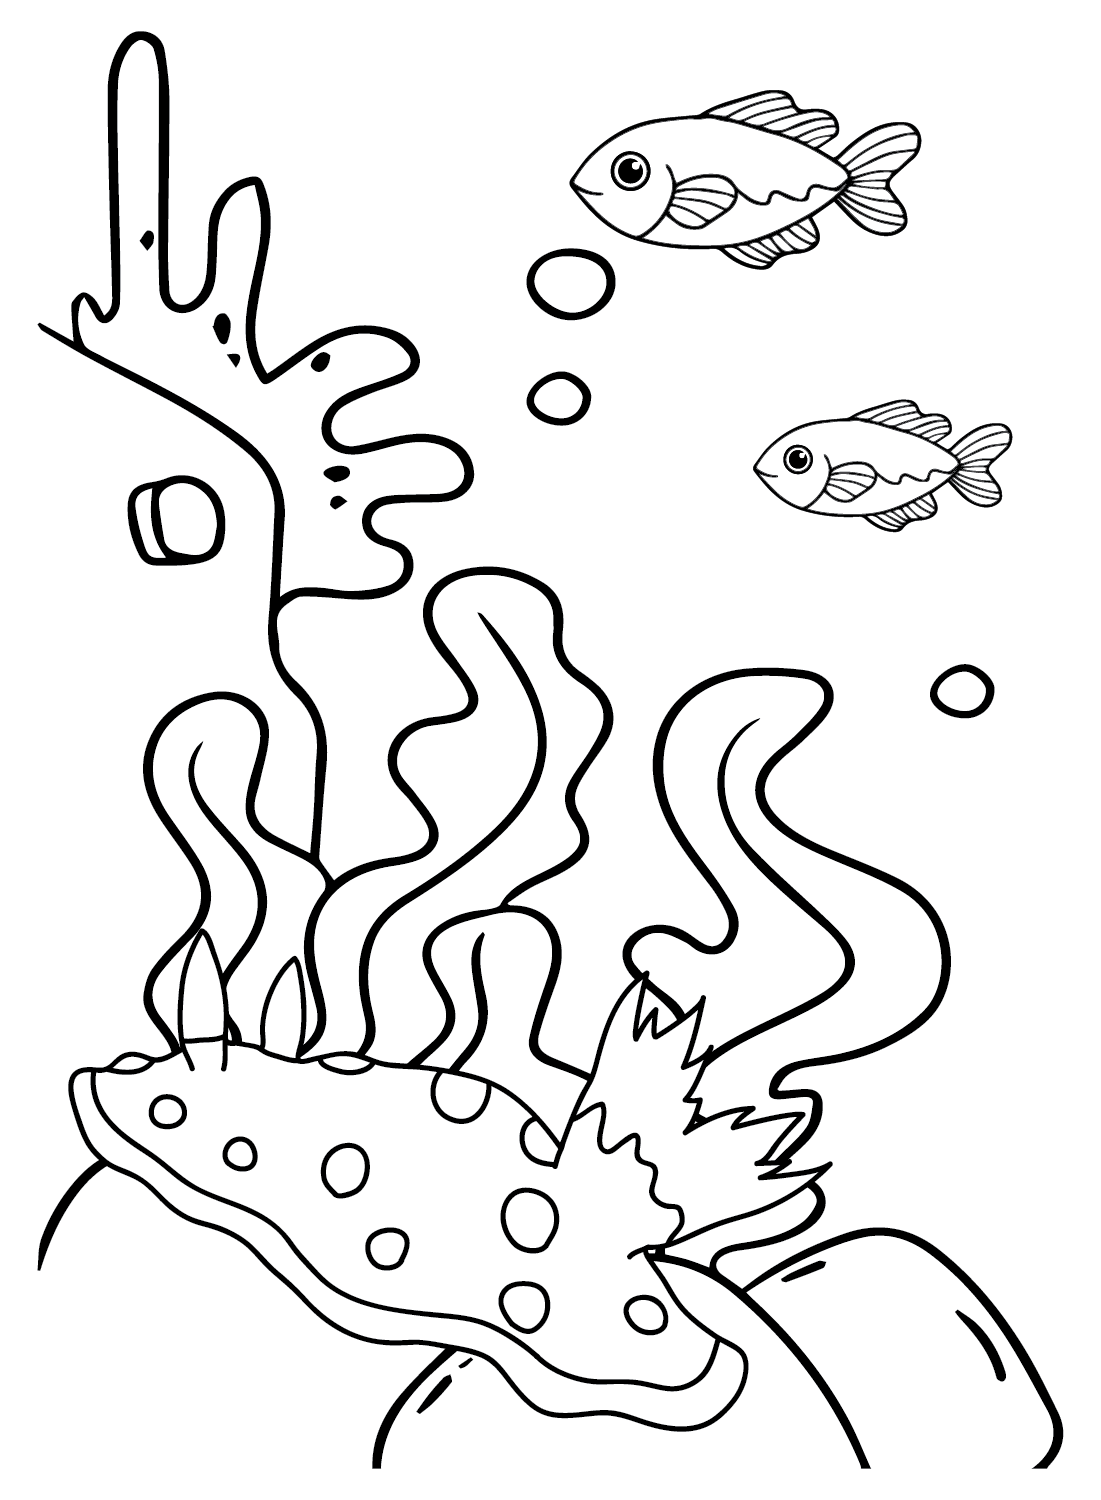 来自 Sea Slug 的 Sea Slug 彩色表